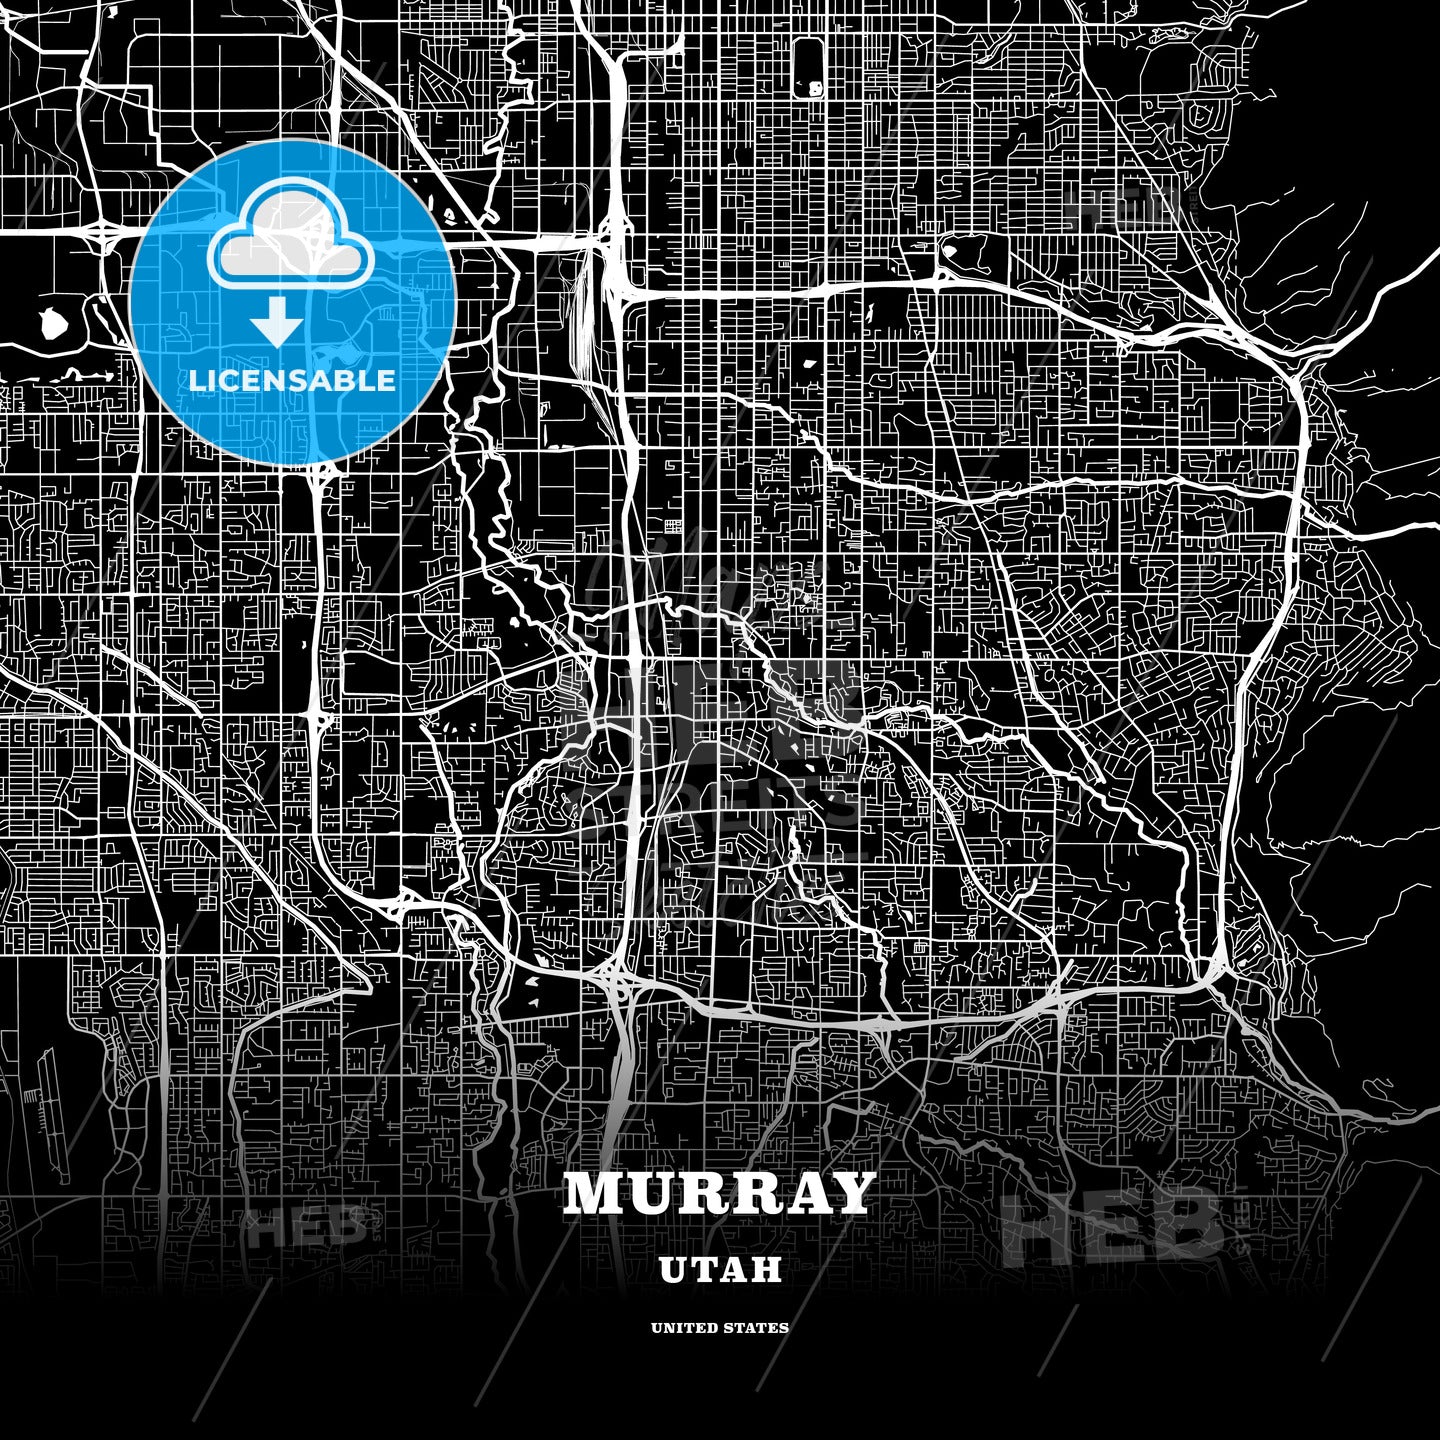 Murray, Utah, USA map